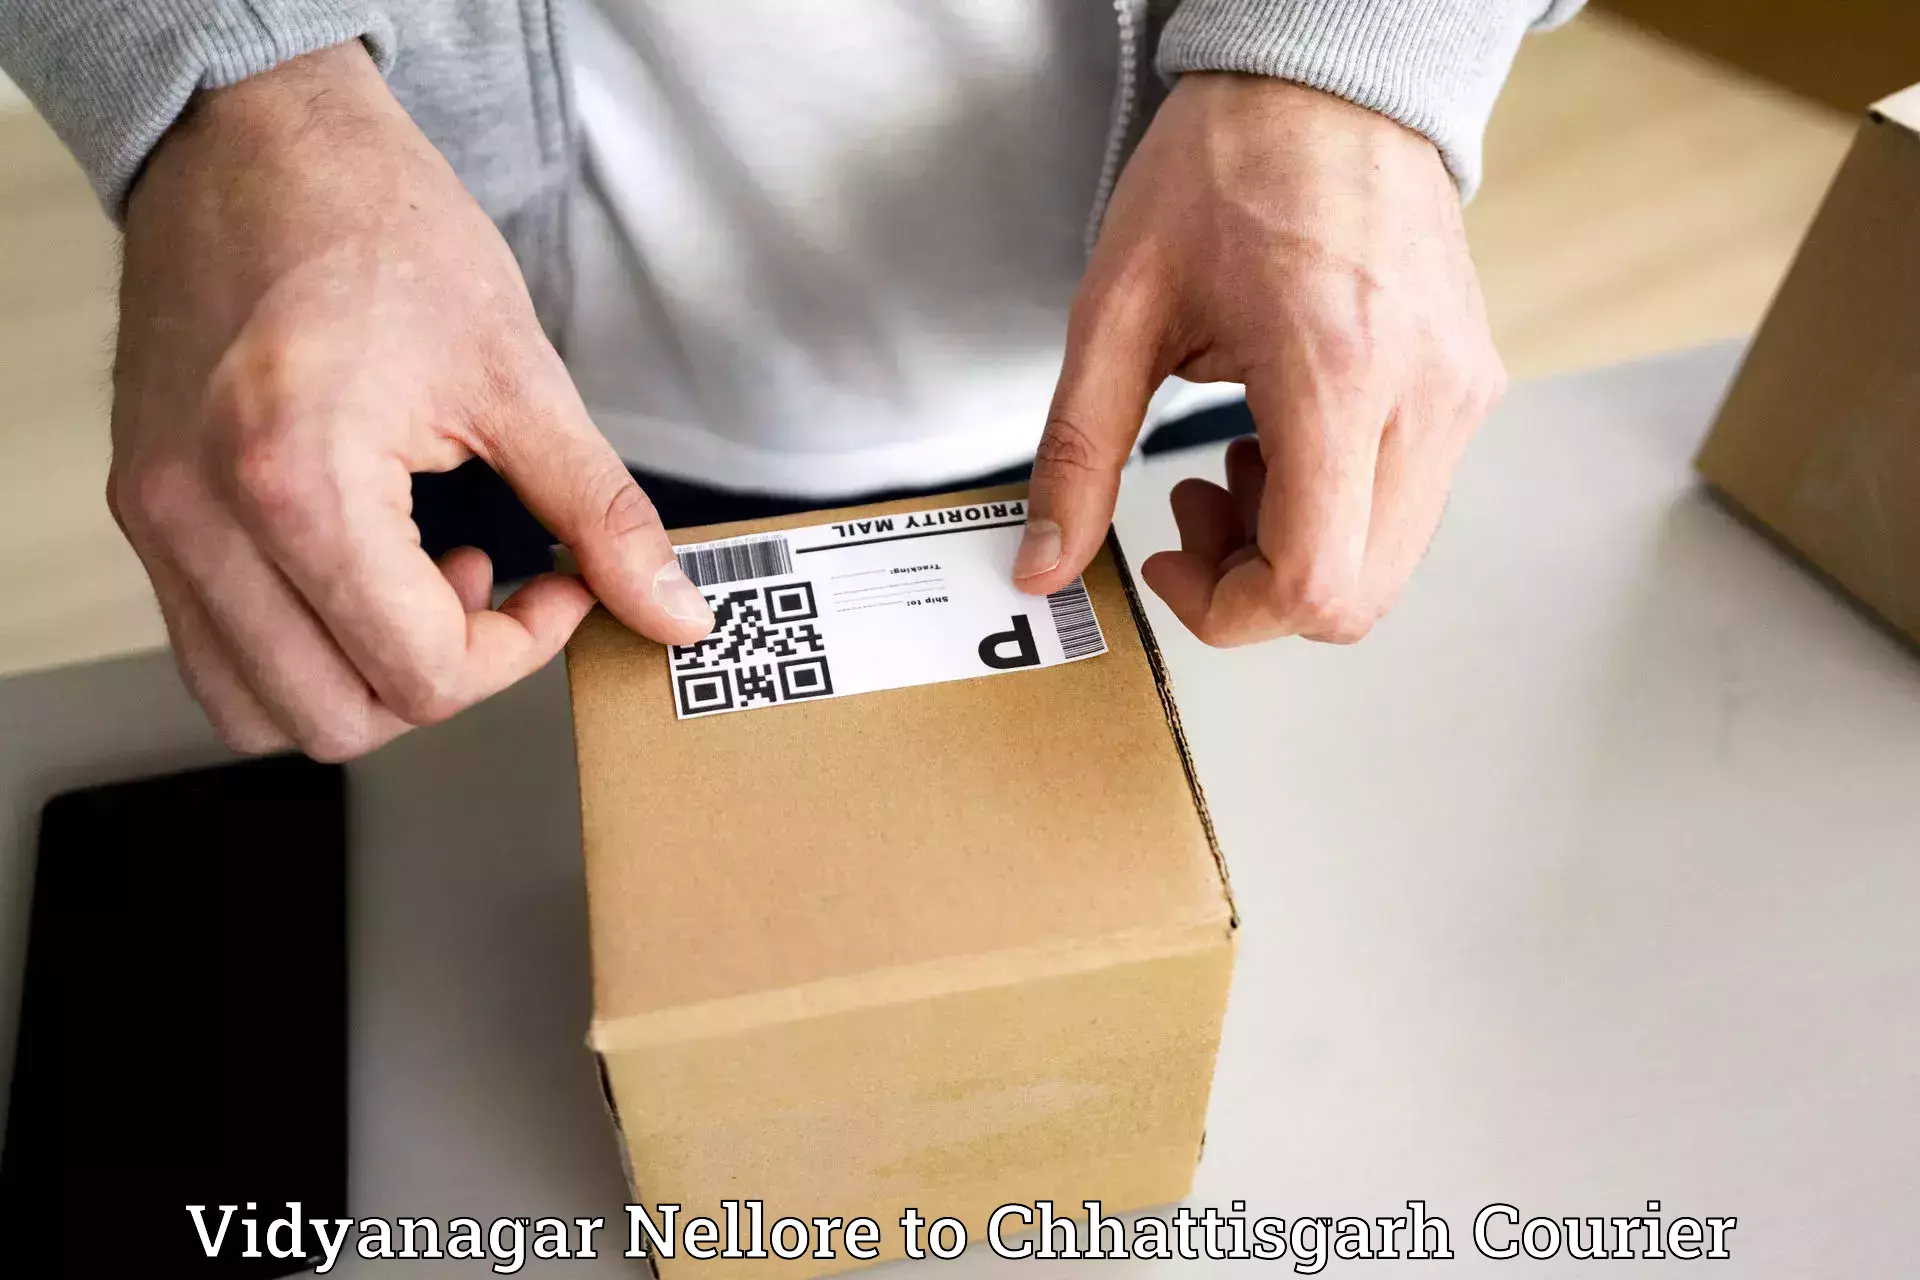 Heavy parcel delivery Vidyanagar Nellore to Raigarh Chhattisgarh